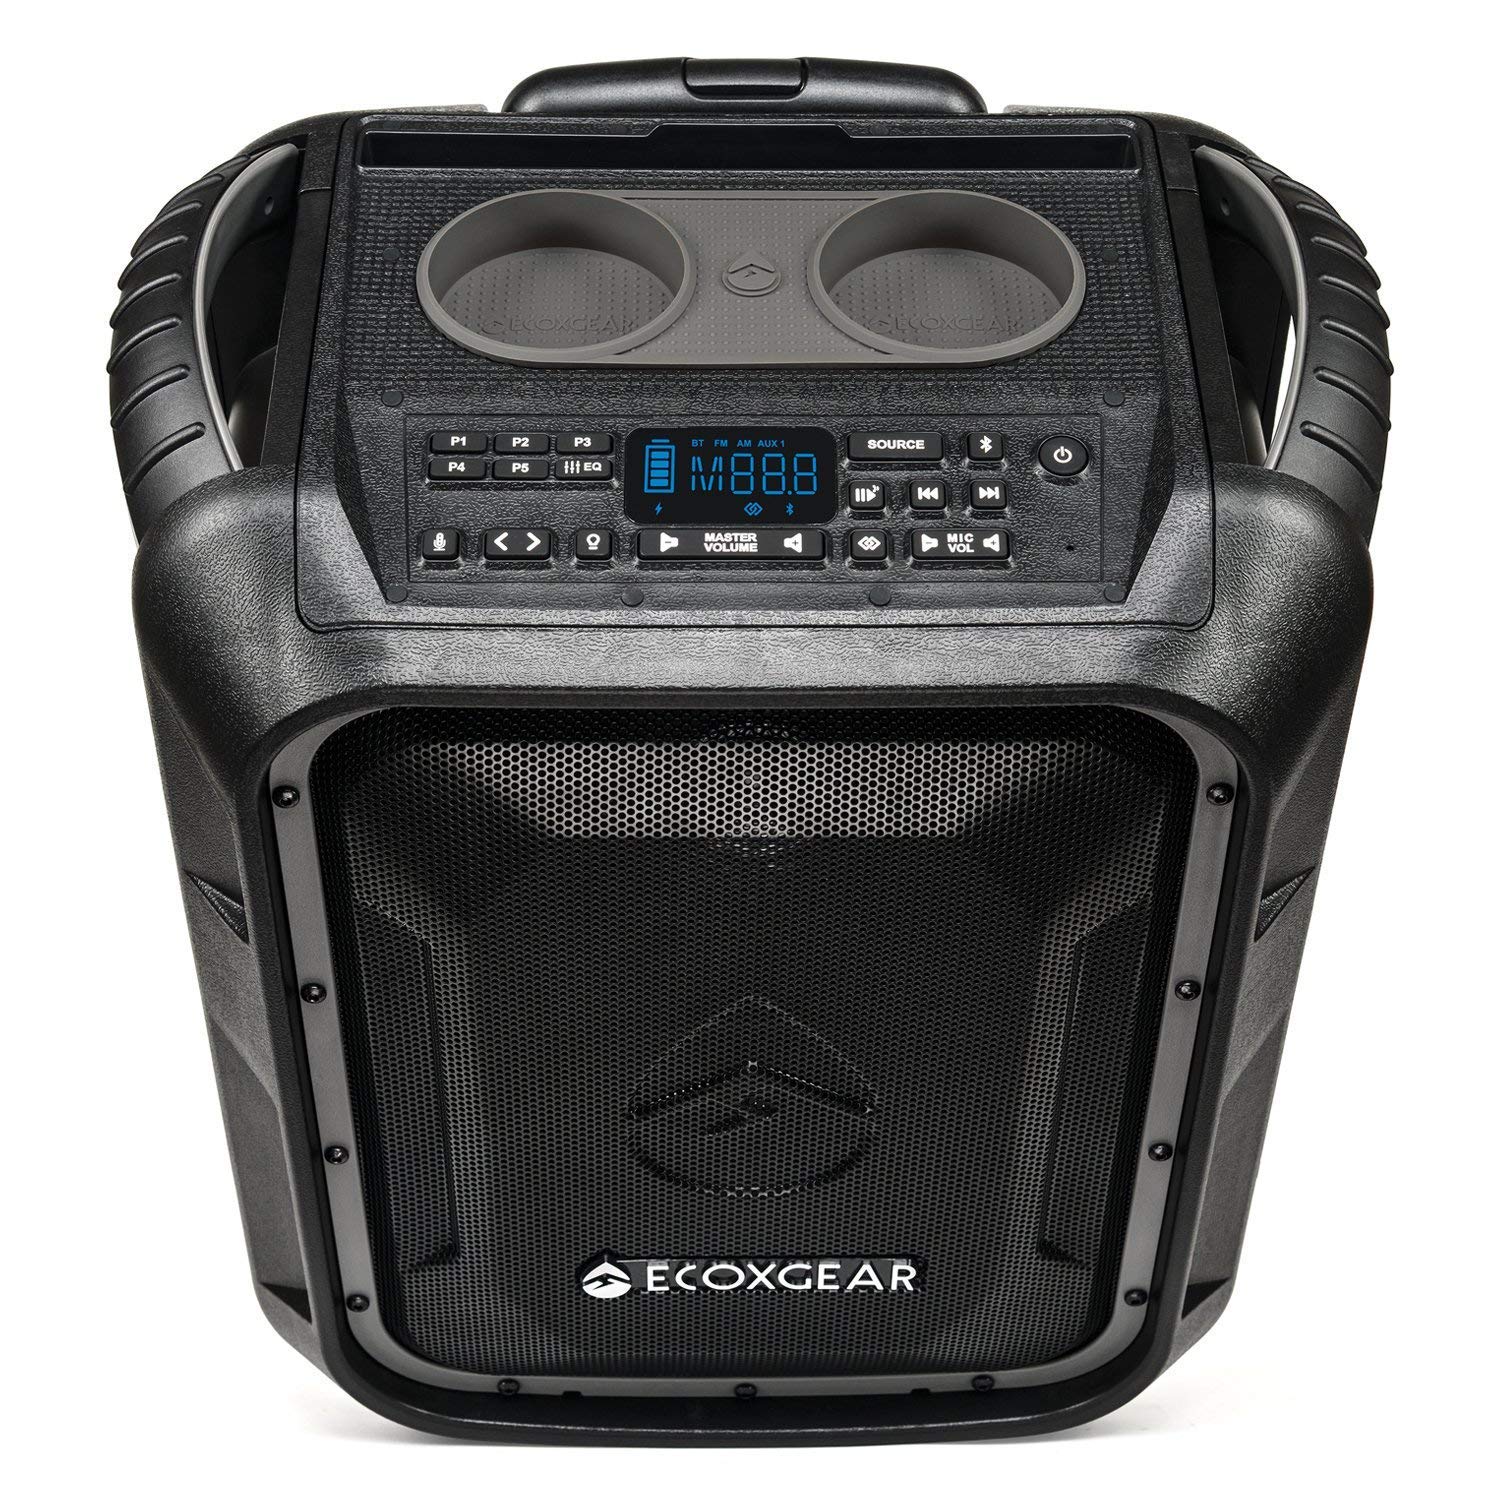 ECOXGEAR EcoBoulder+ GDI-EXBLD810 Haut-parleur et système de sonorisation portable sans fil Bluetooth flottant et étanche de 100 W (gris)